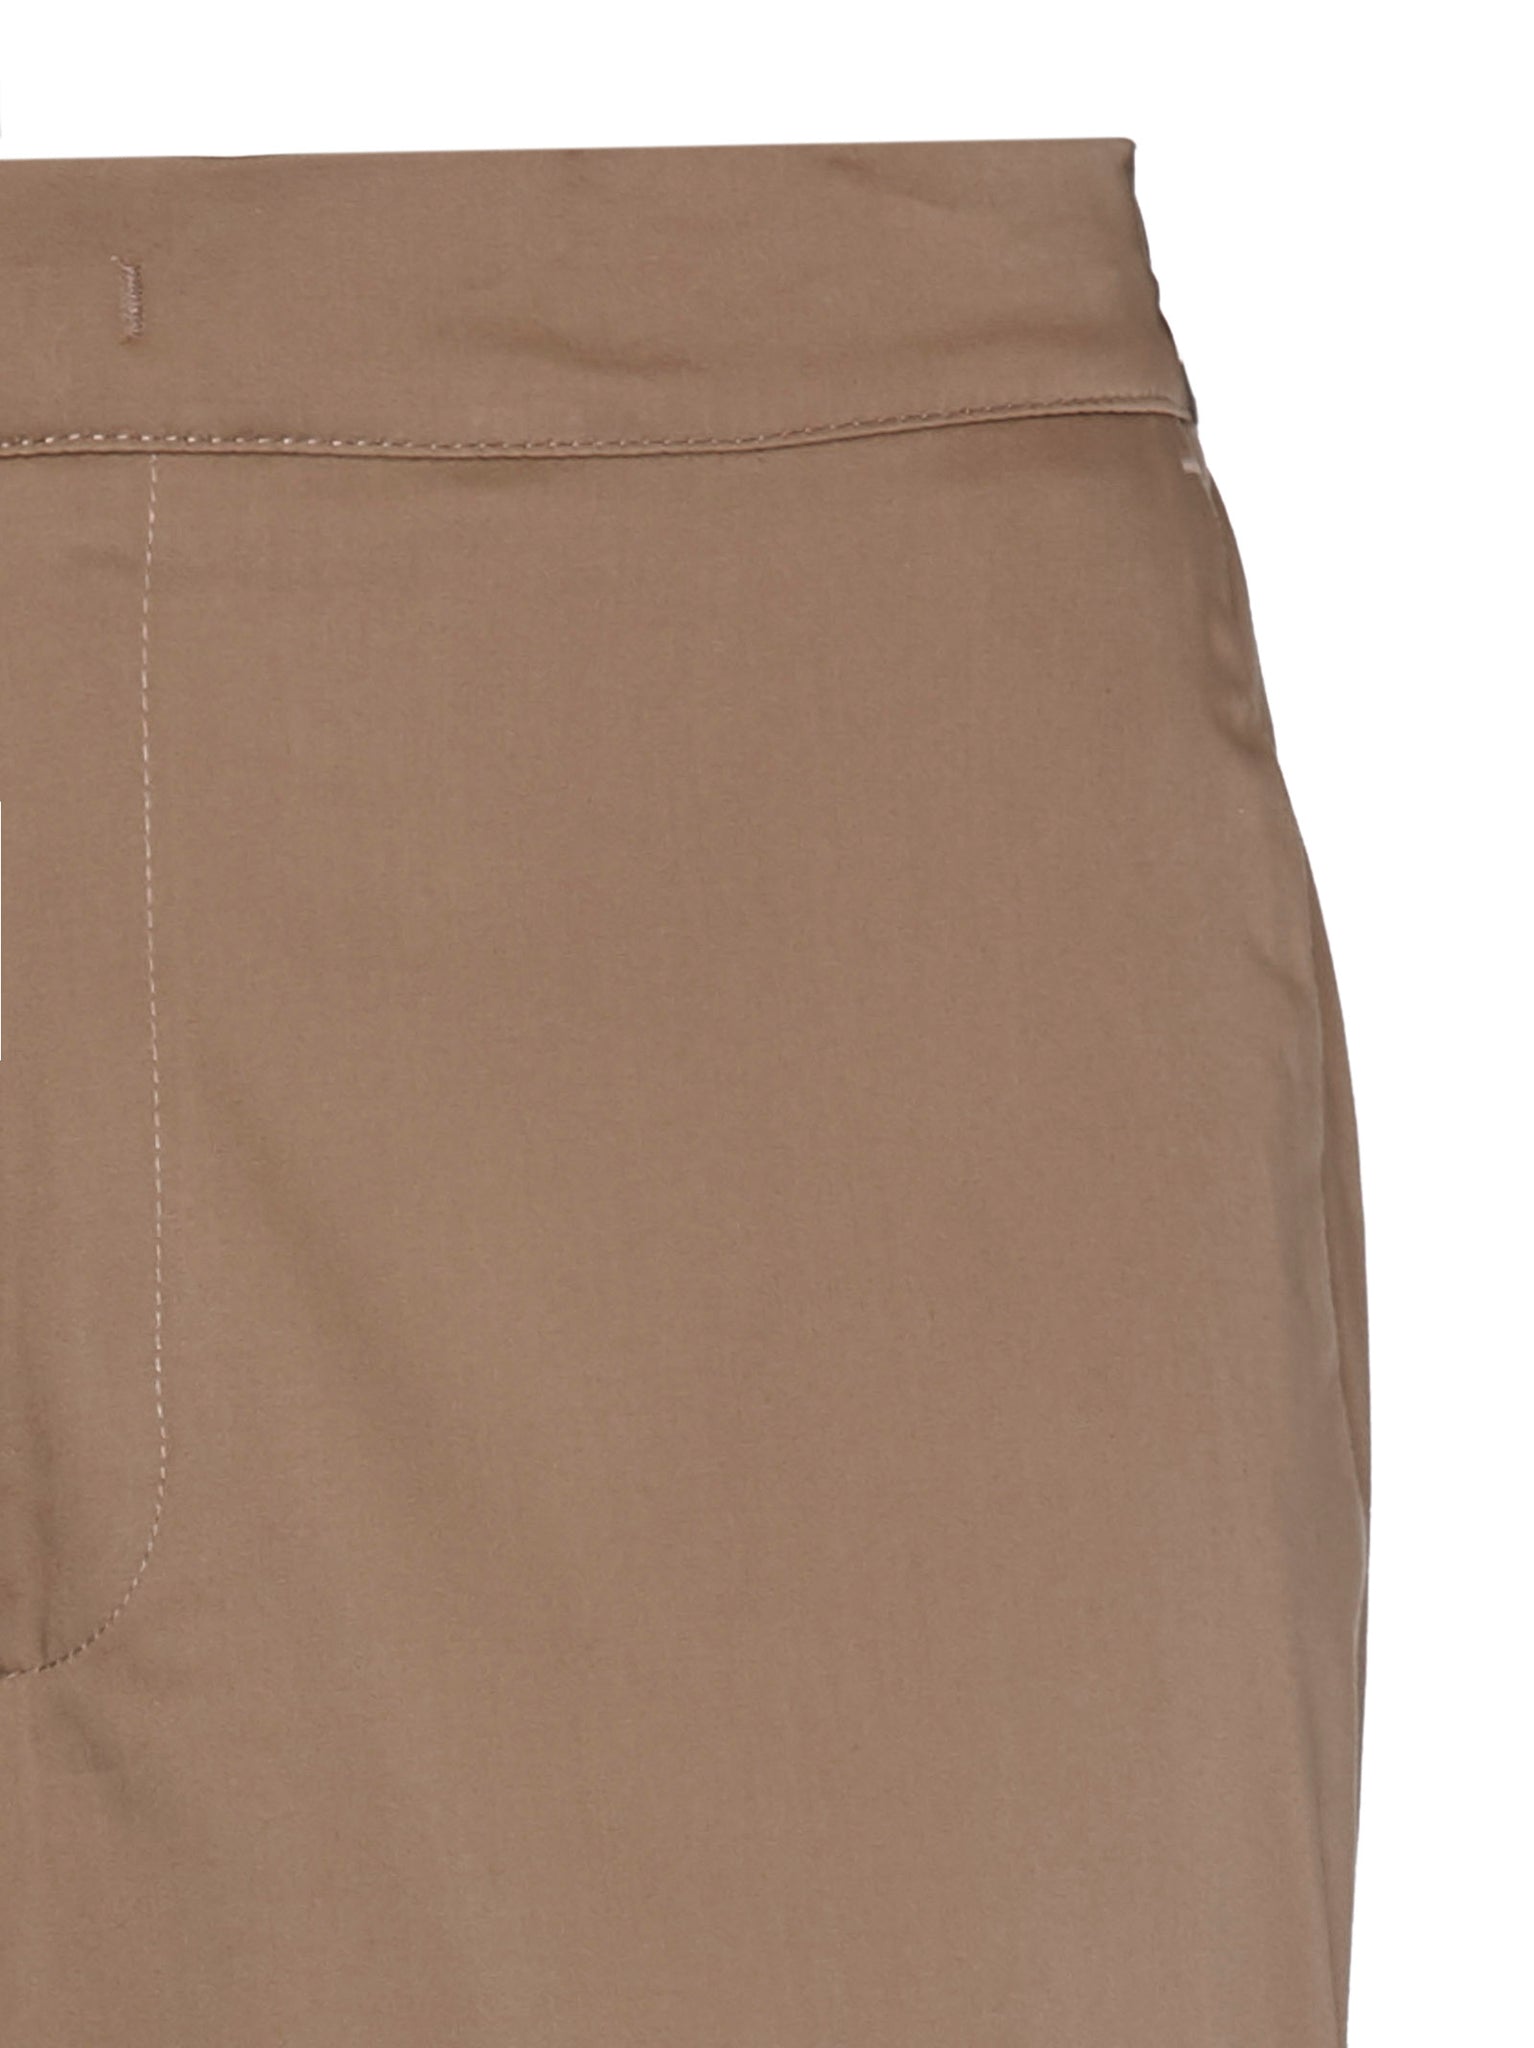 Pantaloni in cotone con risvolti, coulisse in vita e logo sul retro / Beige - Ideal Moda